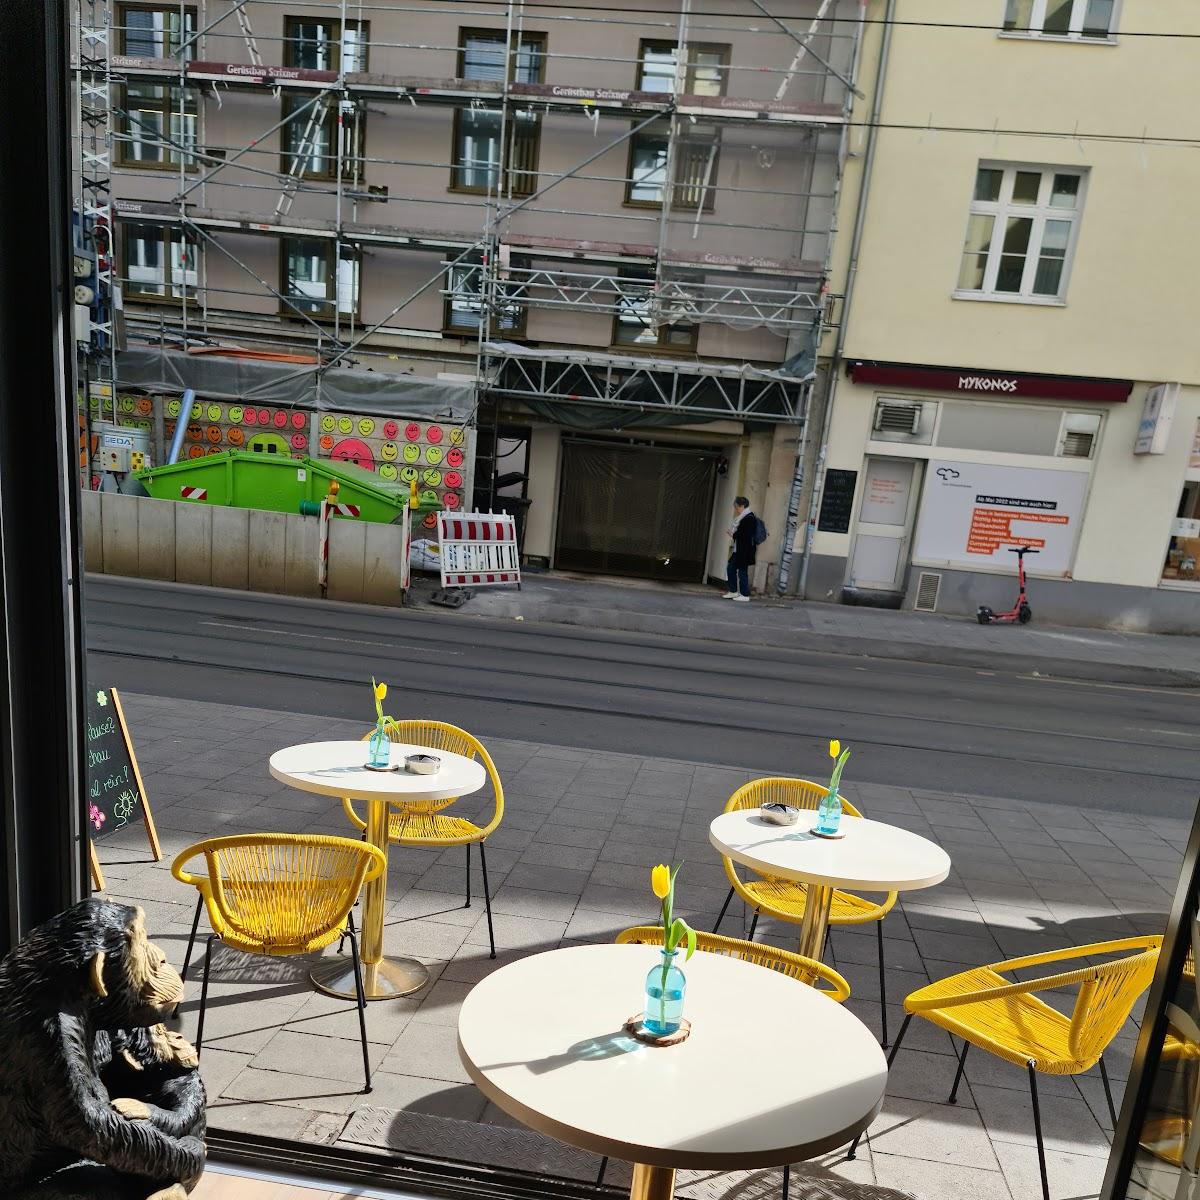 Restaurant "Cafe Papagaio" in München